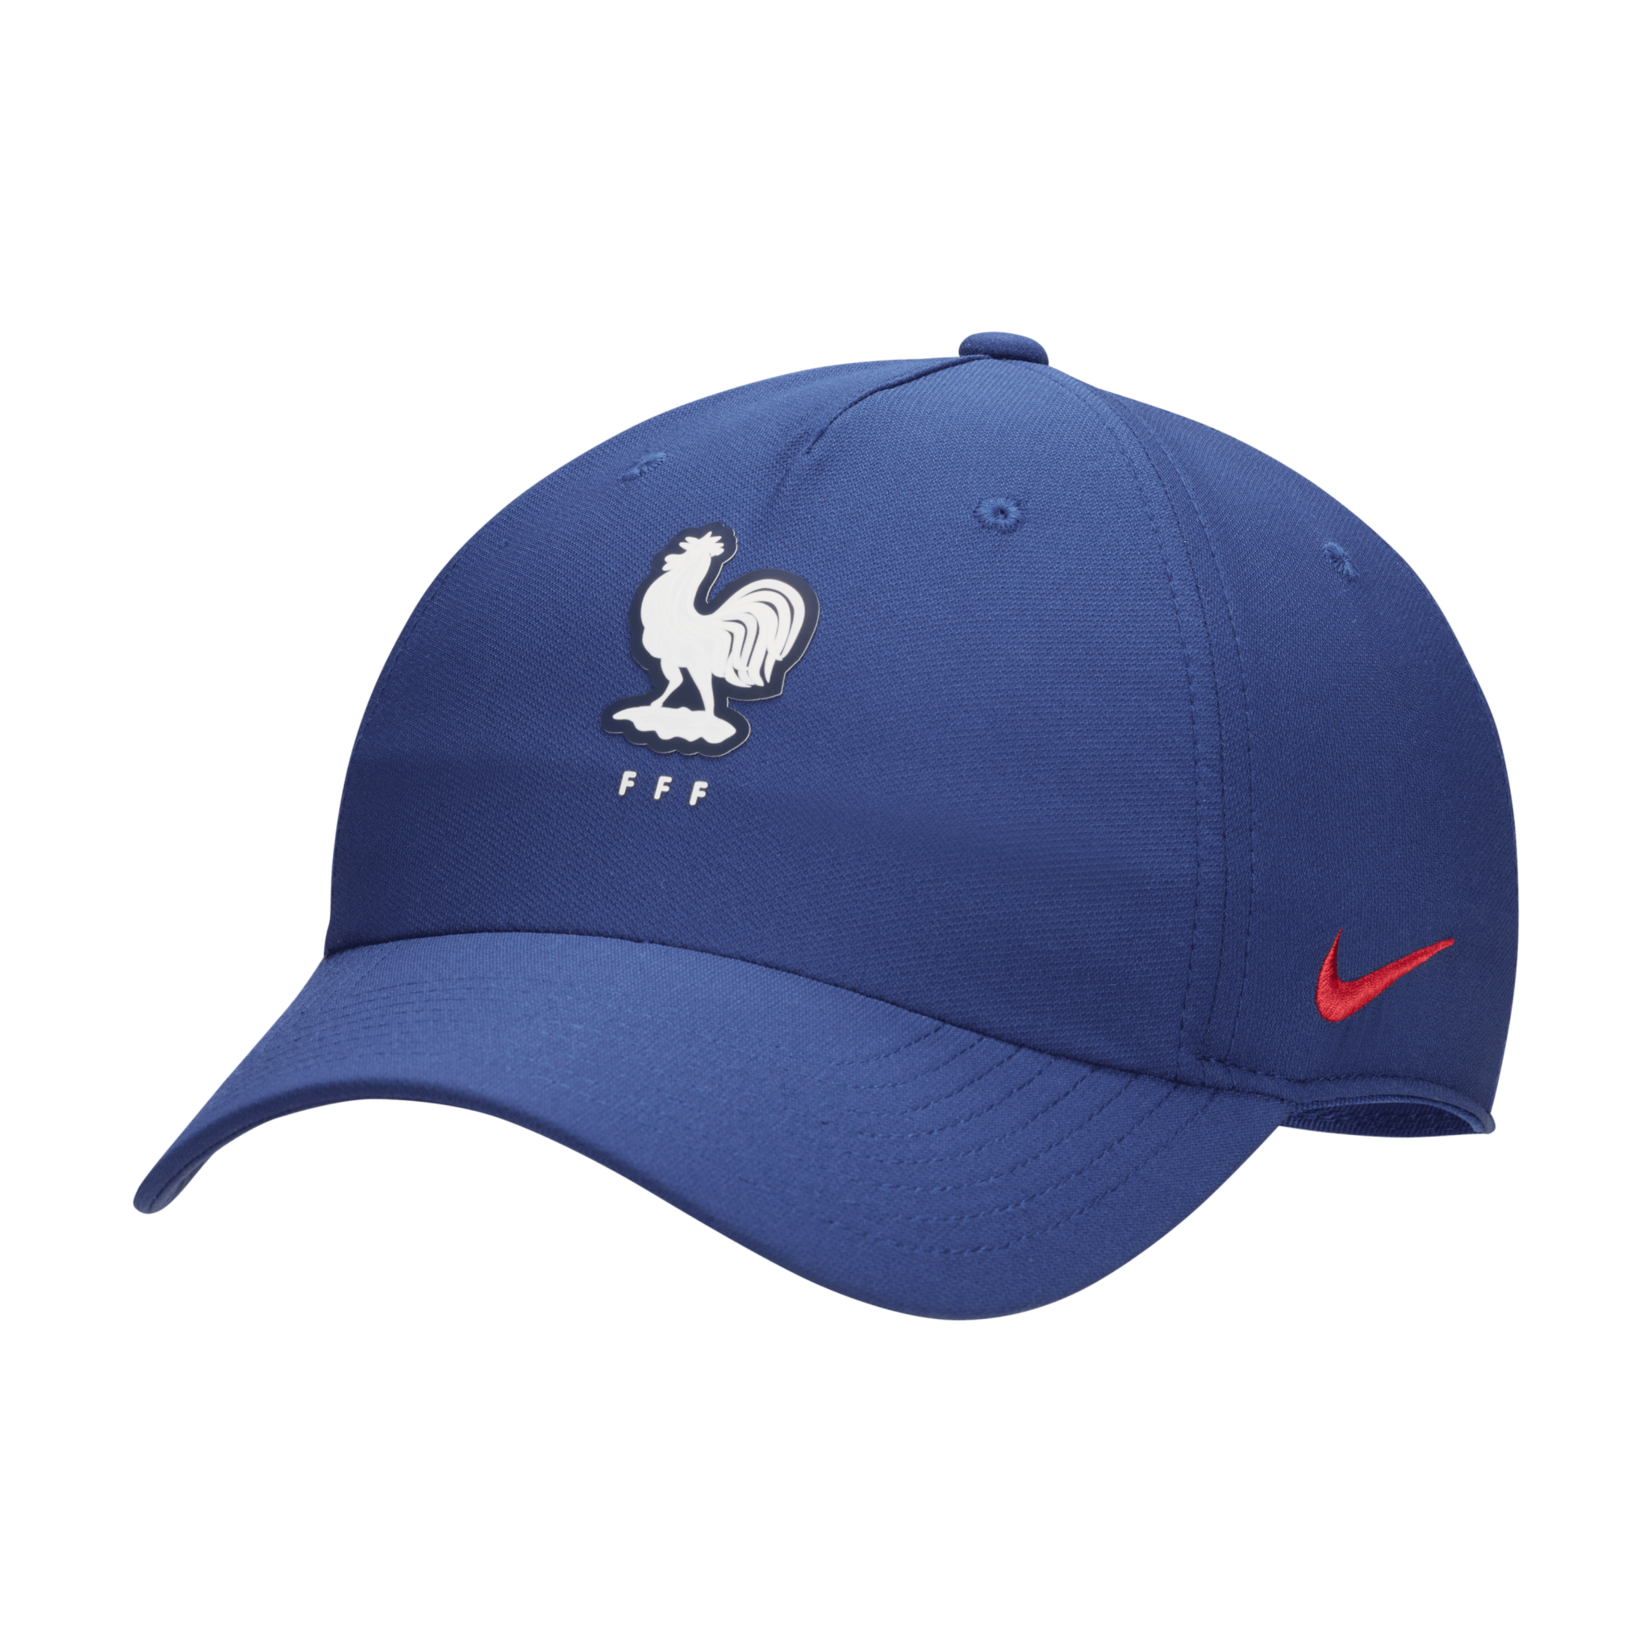 Nike France FFF Club Adjustable Nike Cap